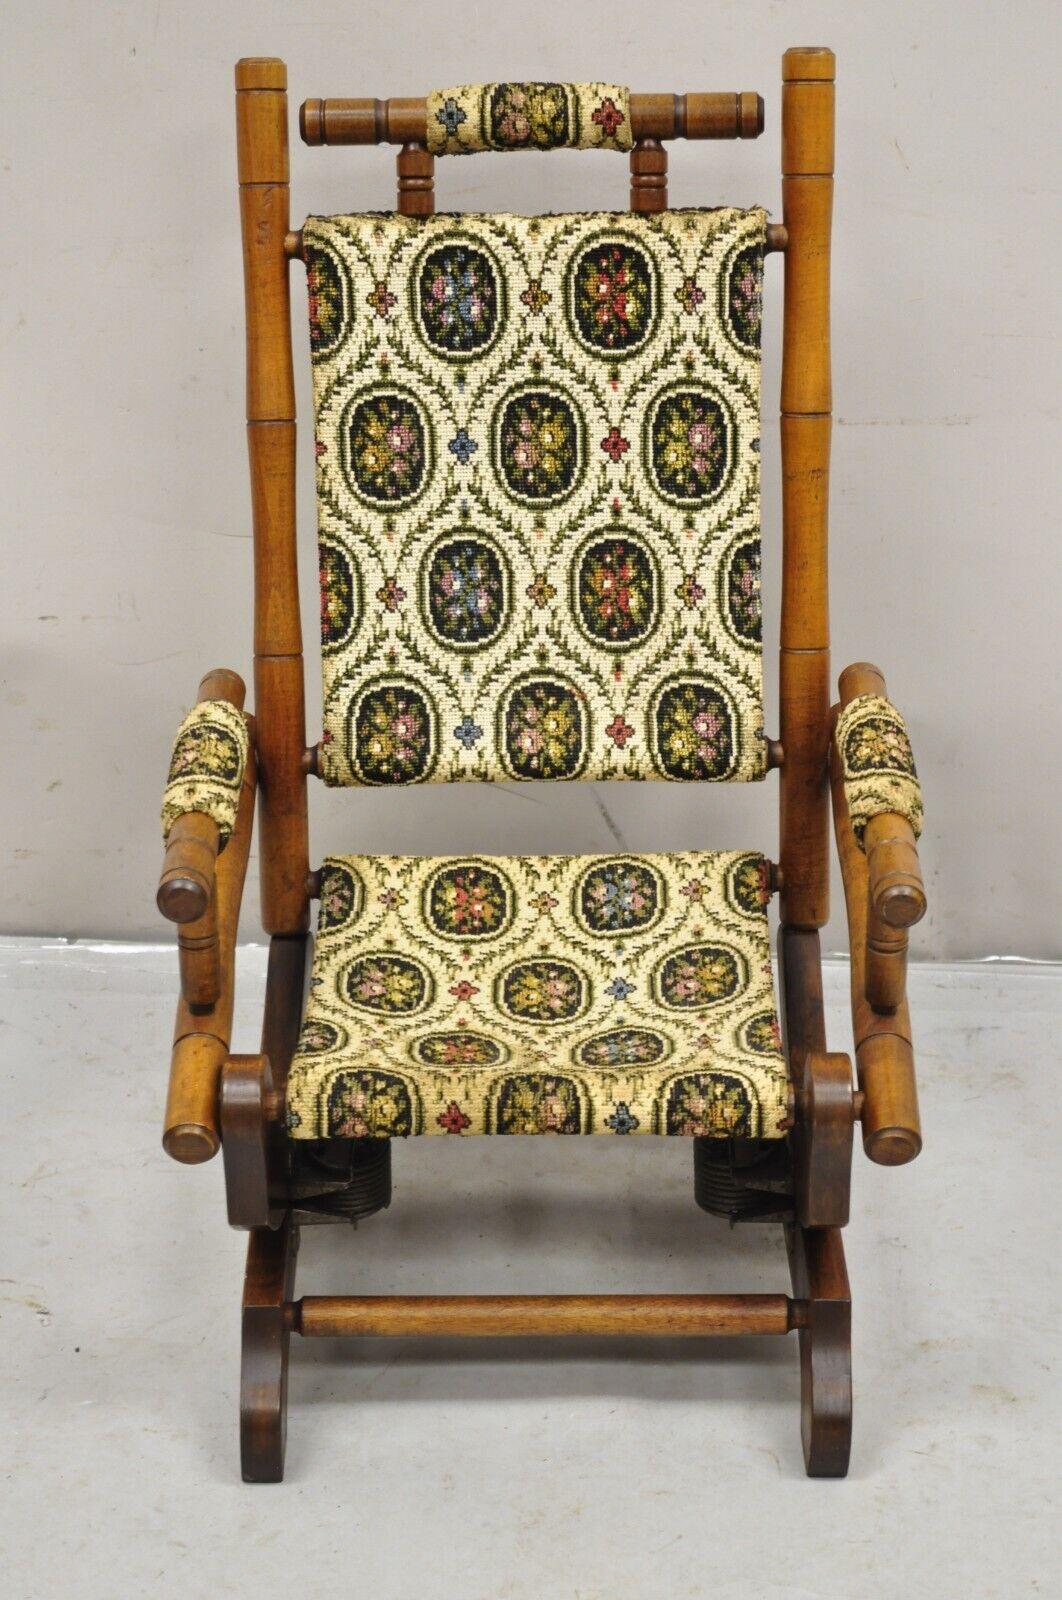 Antike viktorianische kleine Kind Ahornholz Plattform Schaukelstuhl. Der Artikel verfügt über eine geblümte Gobelin-Polsterung, eine Plattform-Federwippe und einen einzigartigen kleinen Stuhl. Um 1900. Abmessungen: 25,5